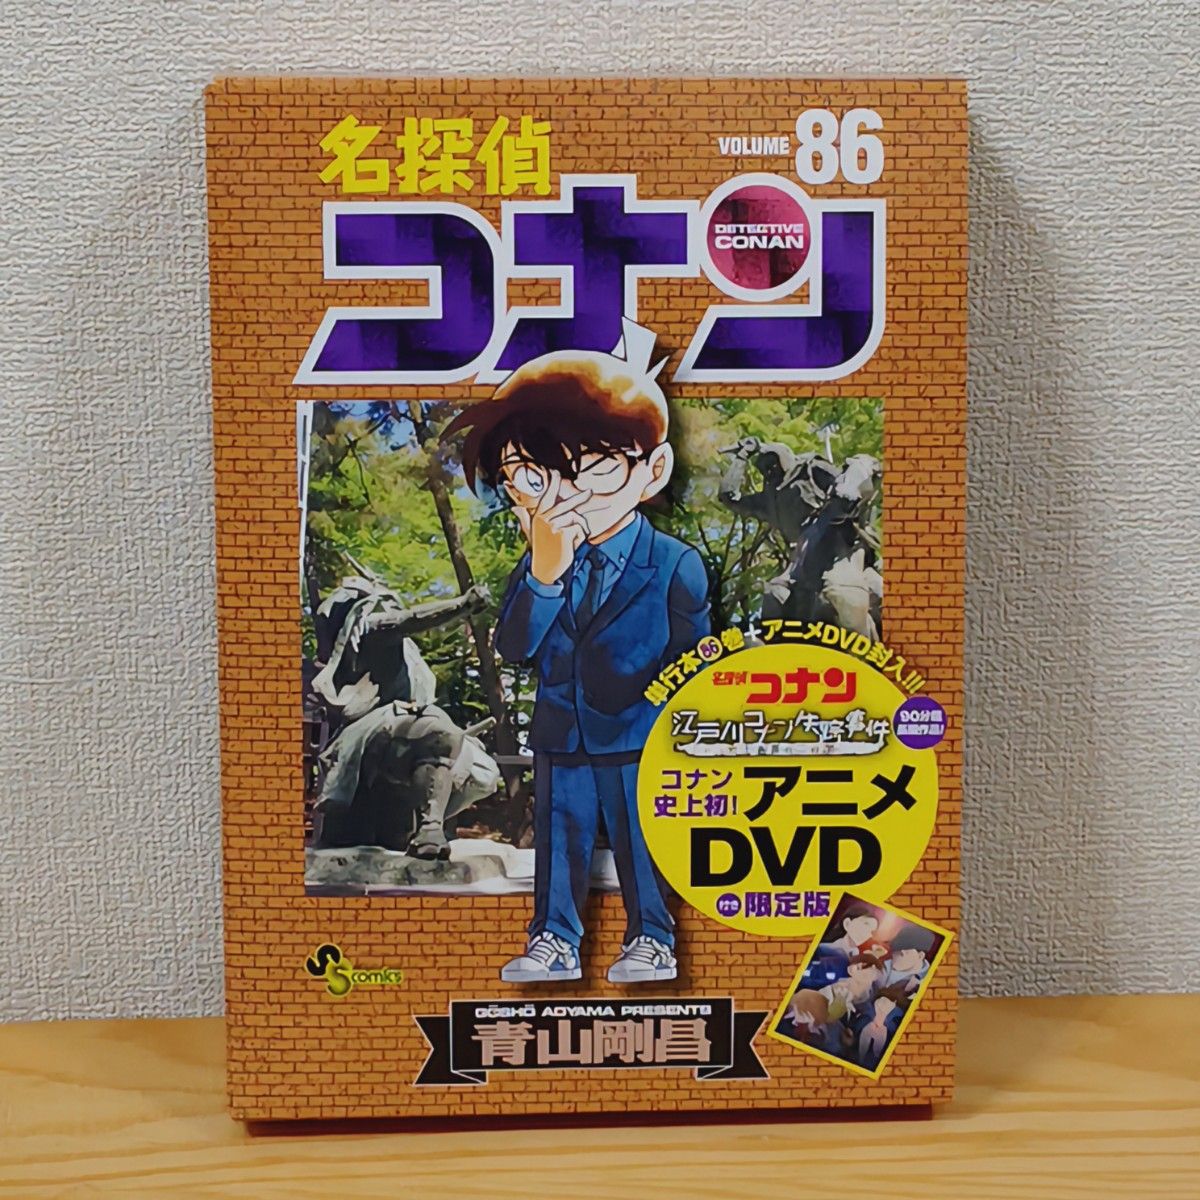 名探偵コナン / コミック86巻 DVD付き限定版 